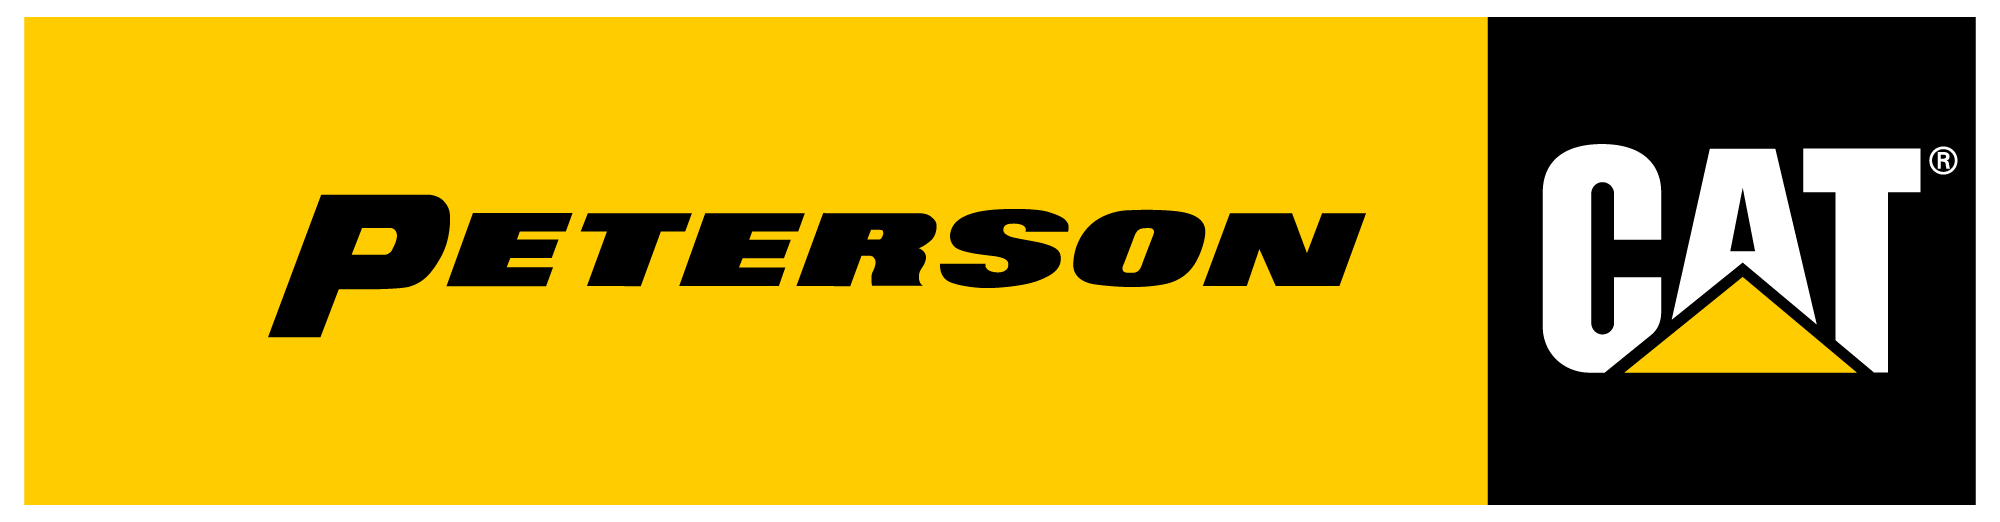 pcat-logo-peterson-cat-2000x522.png